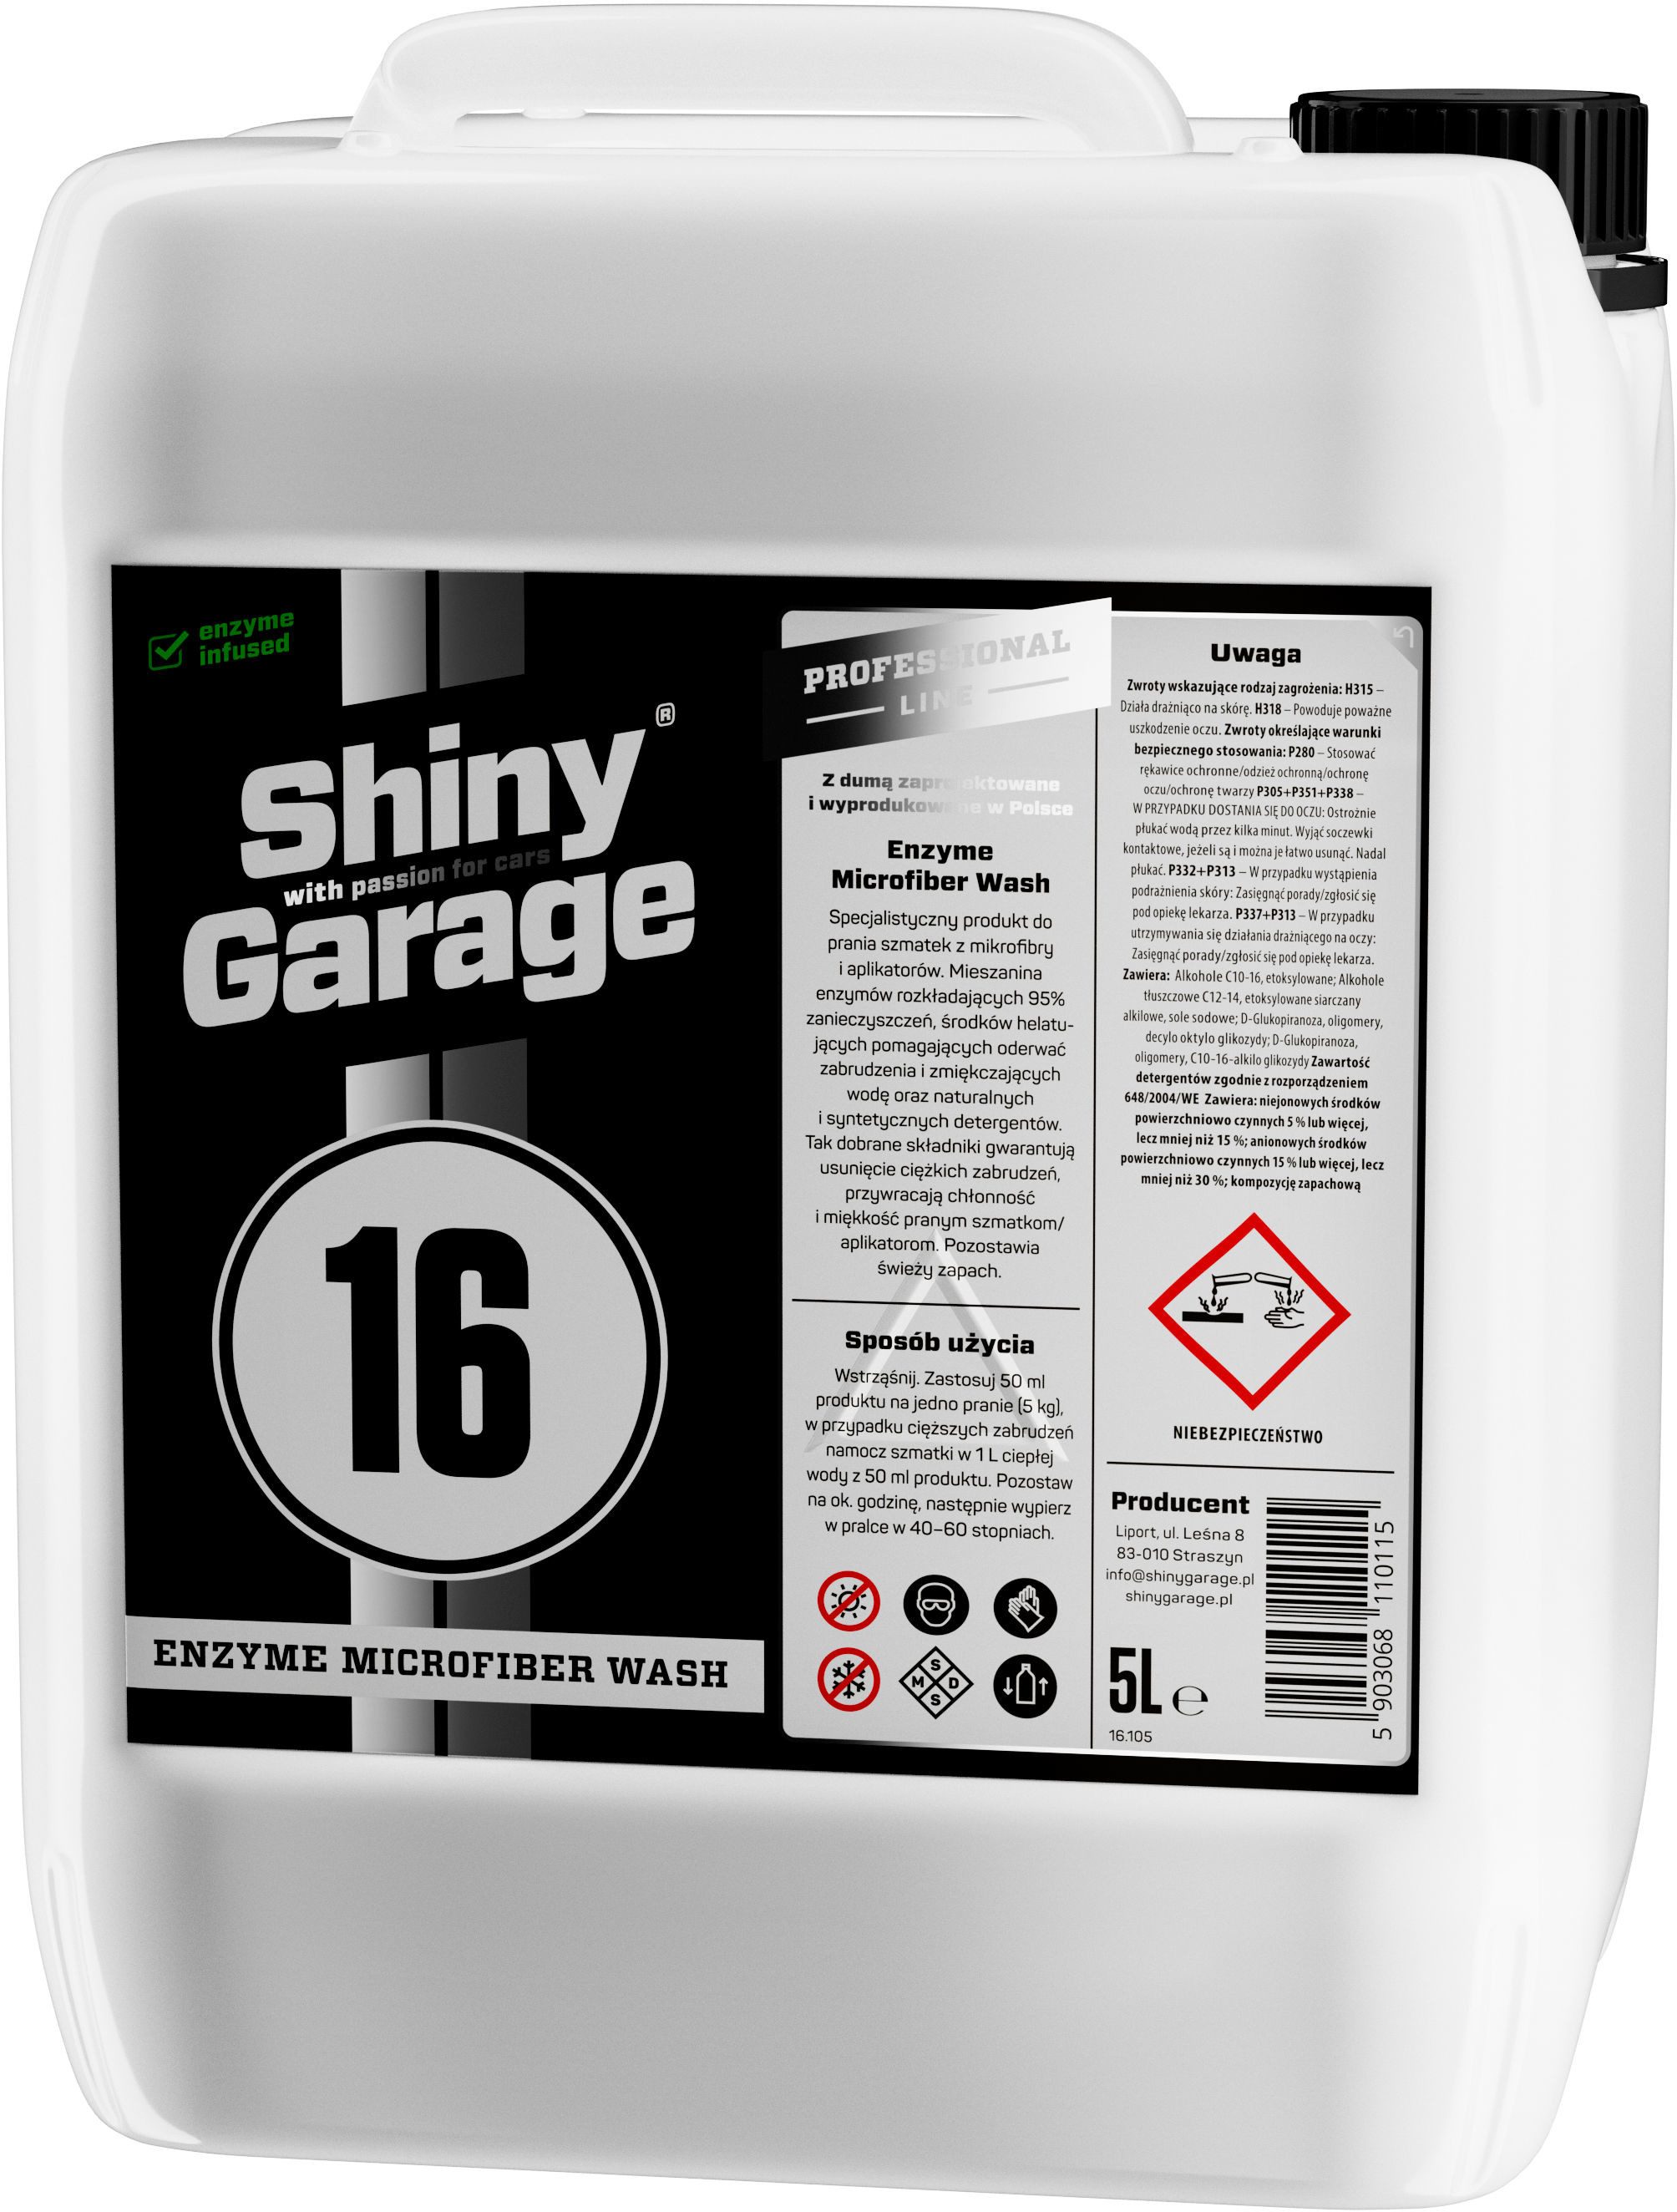 Shiny Garage Enzyme Microfiber Wash - enzymatyczny preparat do prania mikrofibr 5L Shi000122